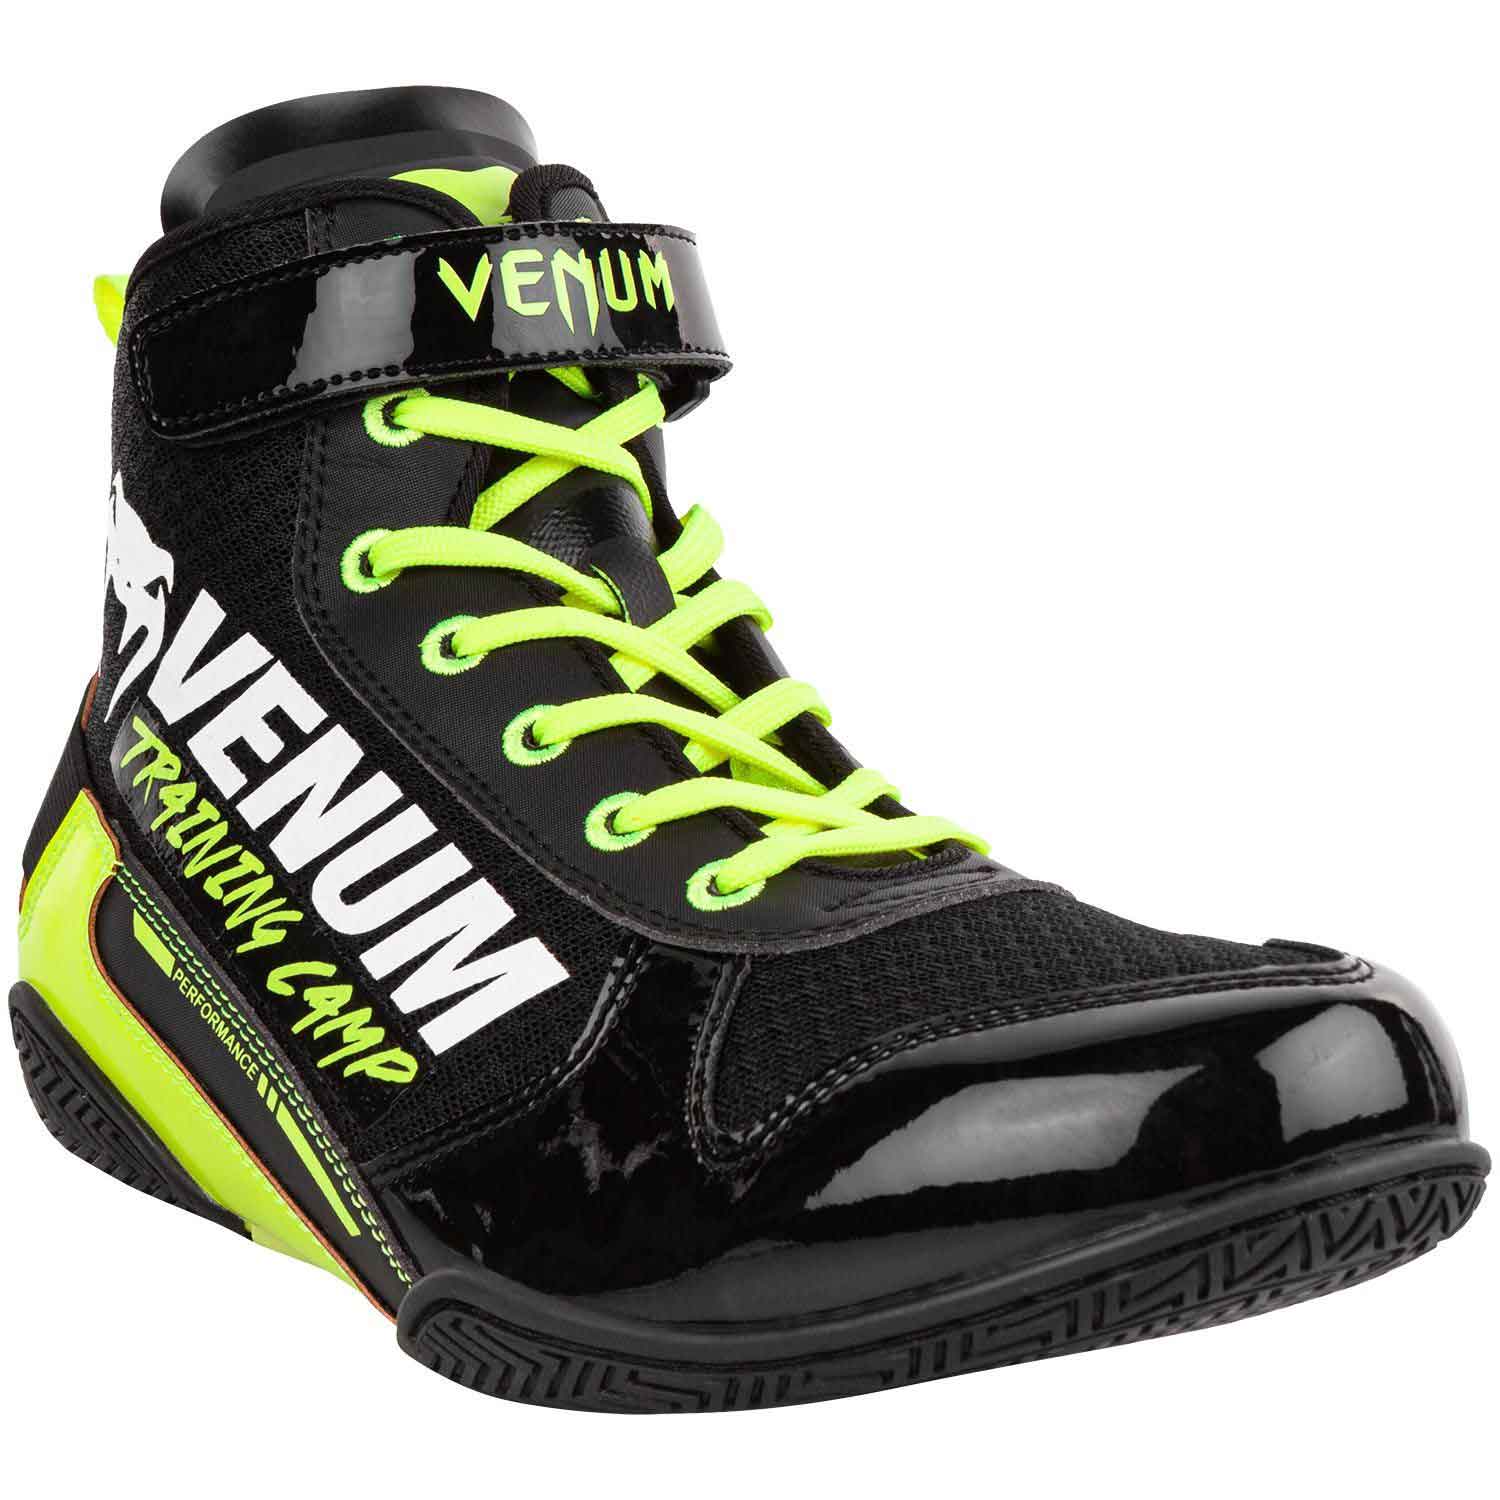 VENUM／ヴェナム　ボクシングシューズ　　GIANT LOW VTC 2 EDITION BOXING SHOES／ジャイアント・ロー VTC 2 エディション ボクシングシューズ（黒／ネオイエロー）